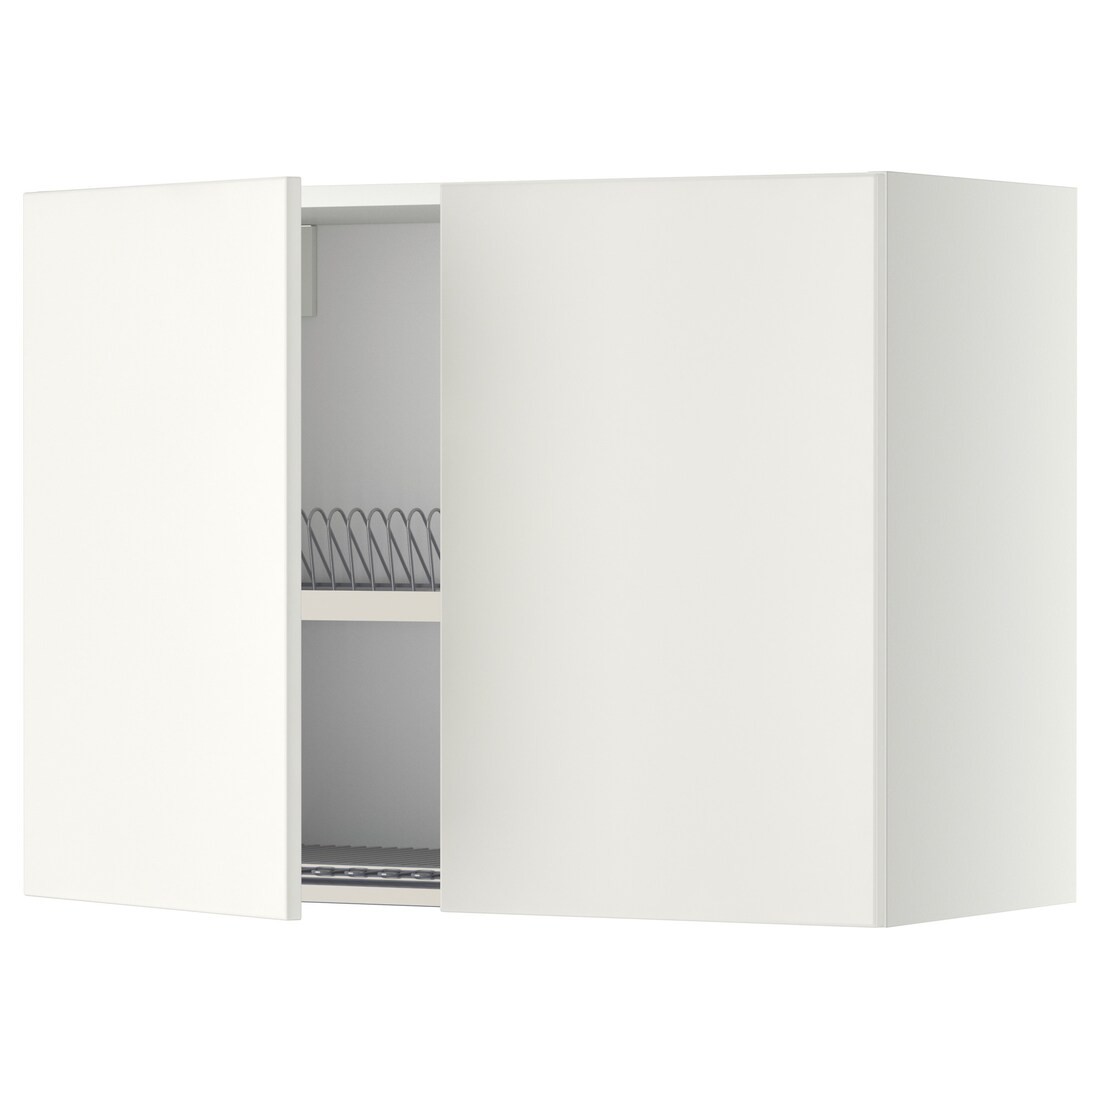 METOD МЕТОД Навесной шкаф с посудной сушилкой / 2 дверцы, белый / Veddinge белый, 80x60 см